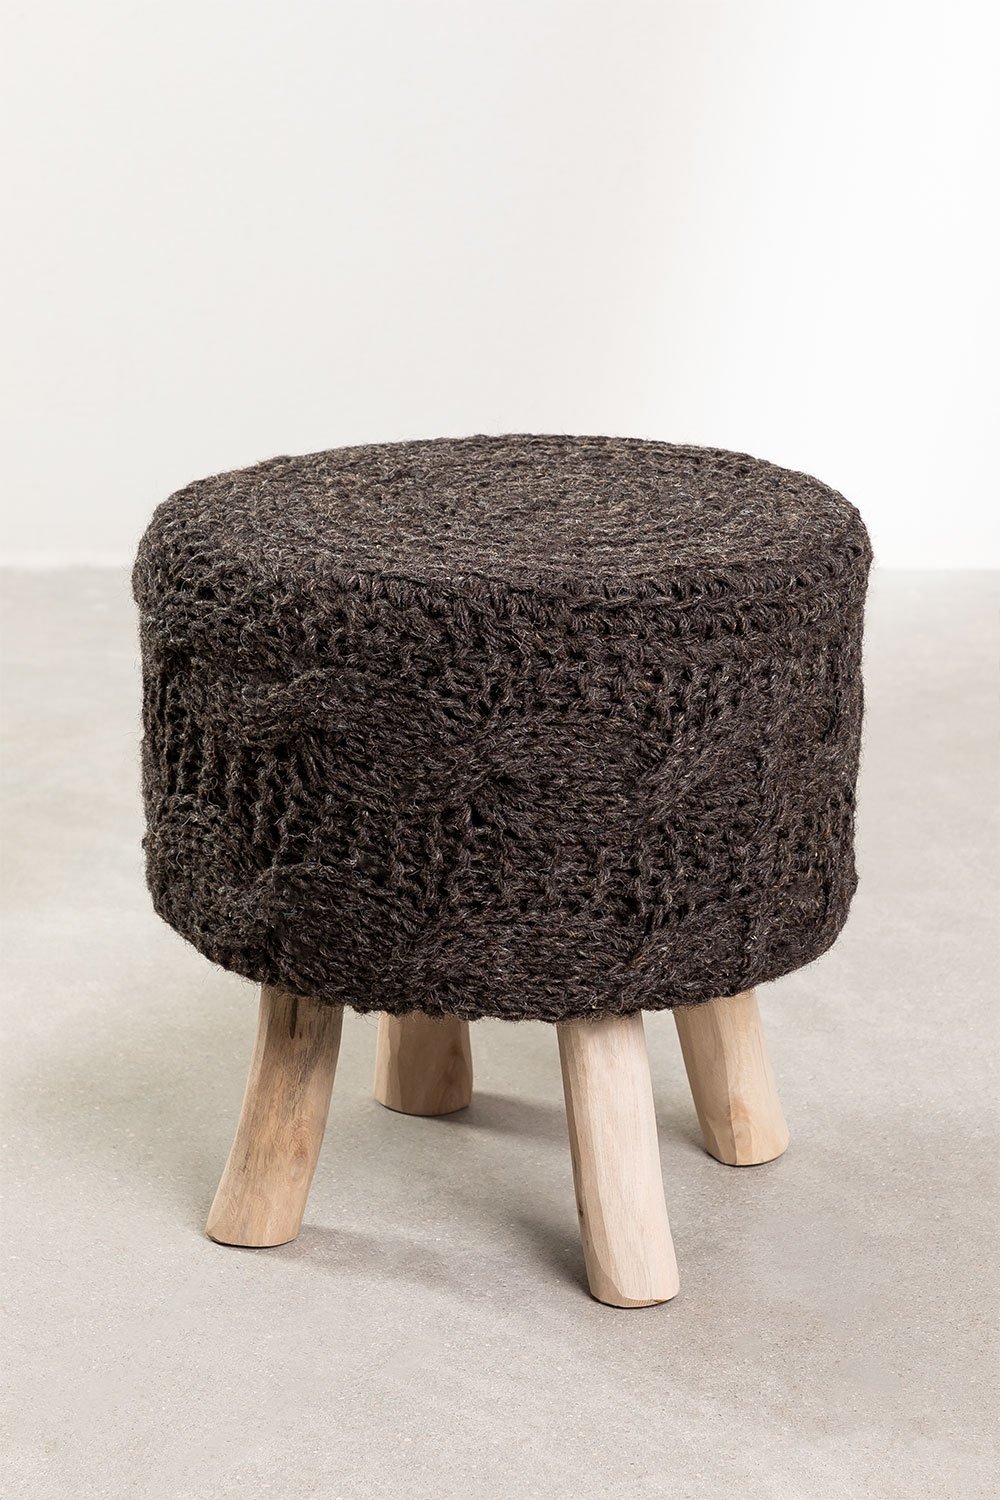 Sgabello basso rotondo in lana e legno Rixar , immagine della galleria 1